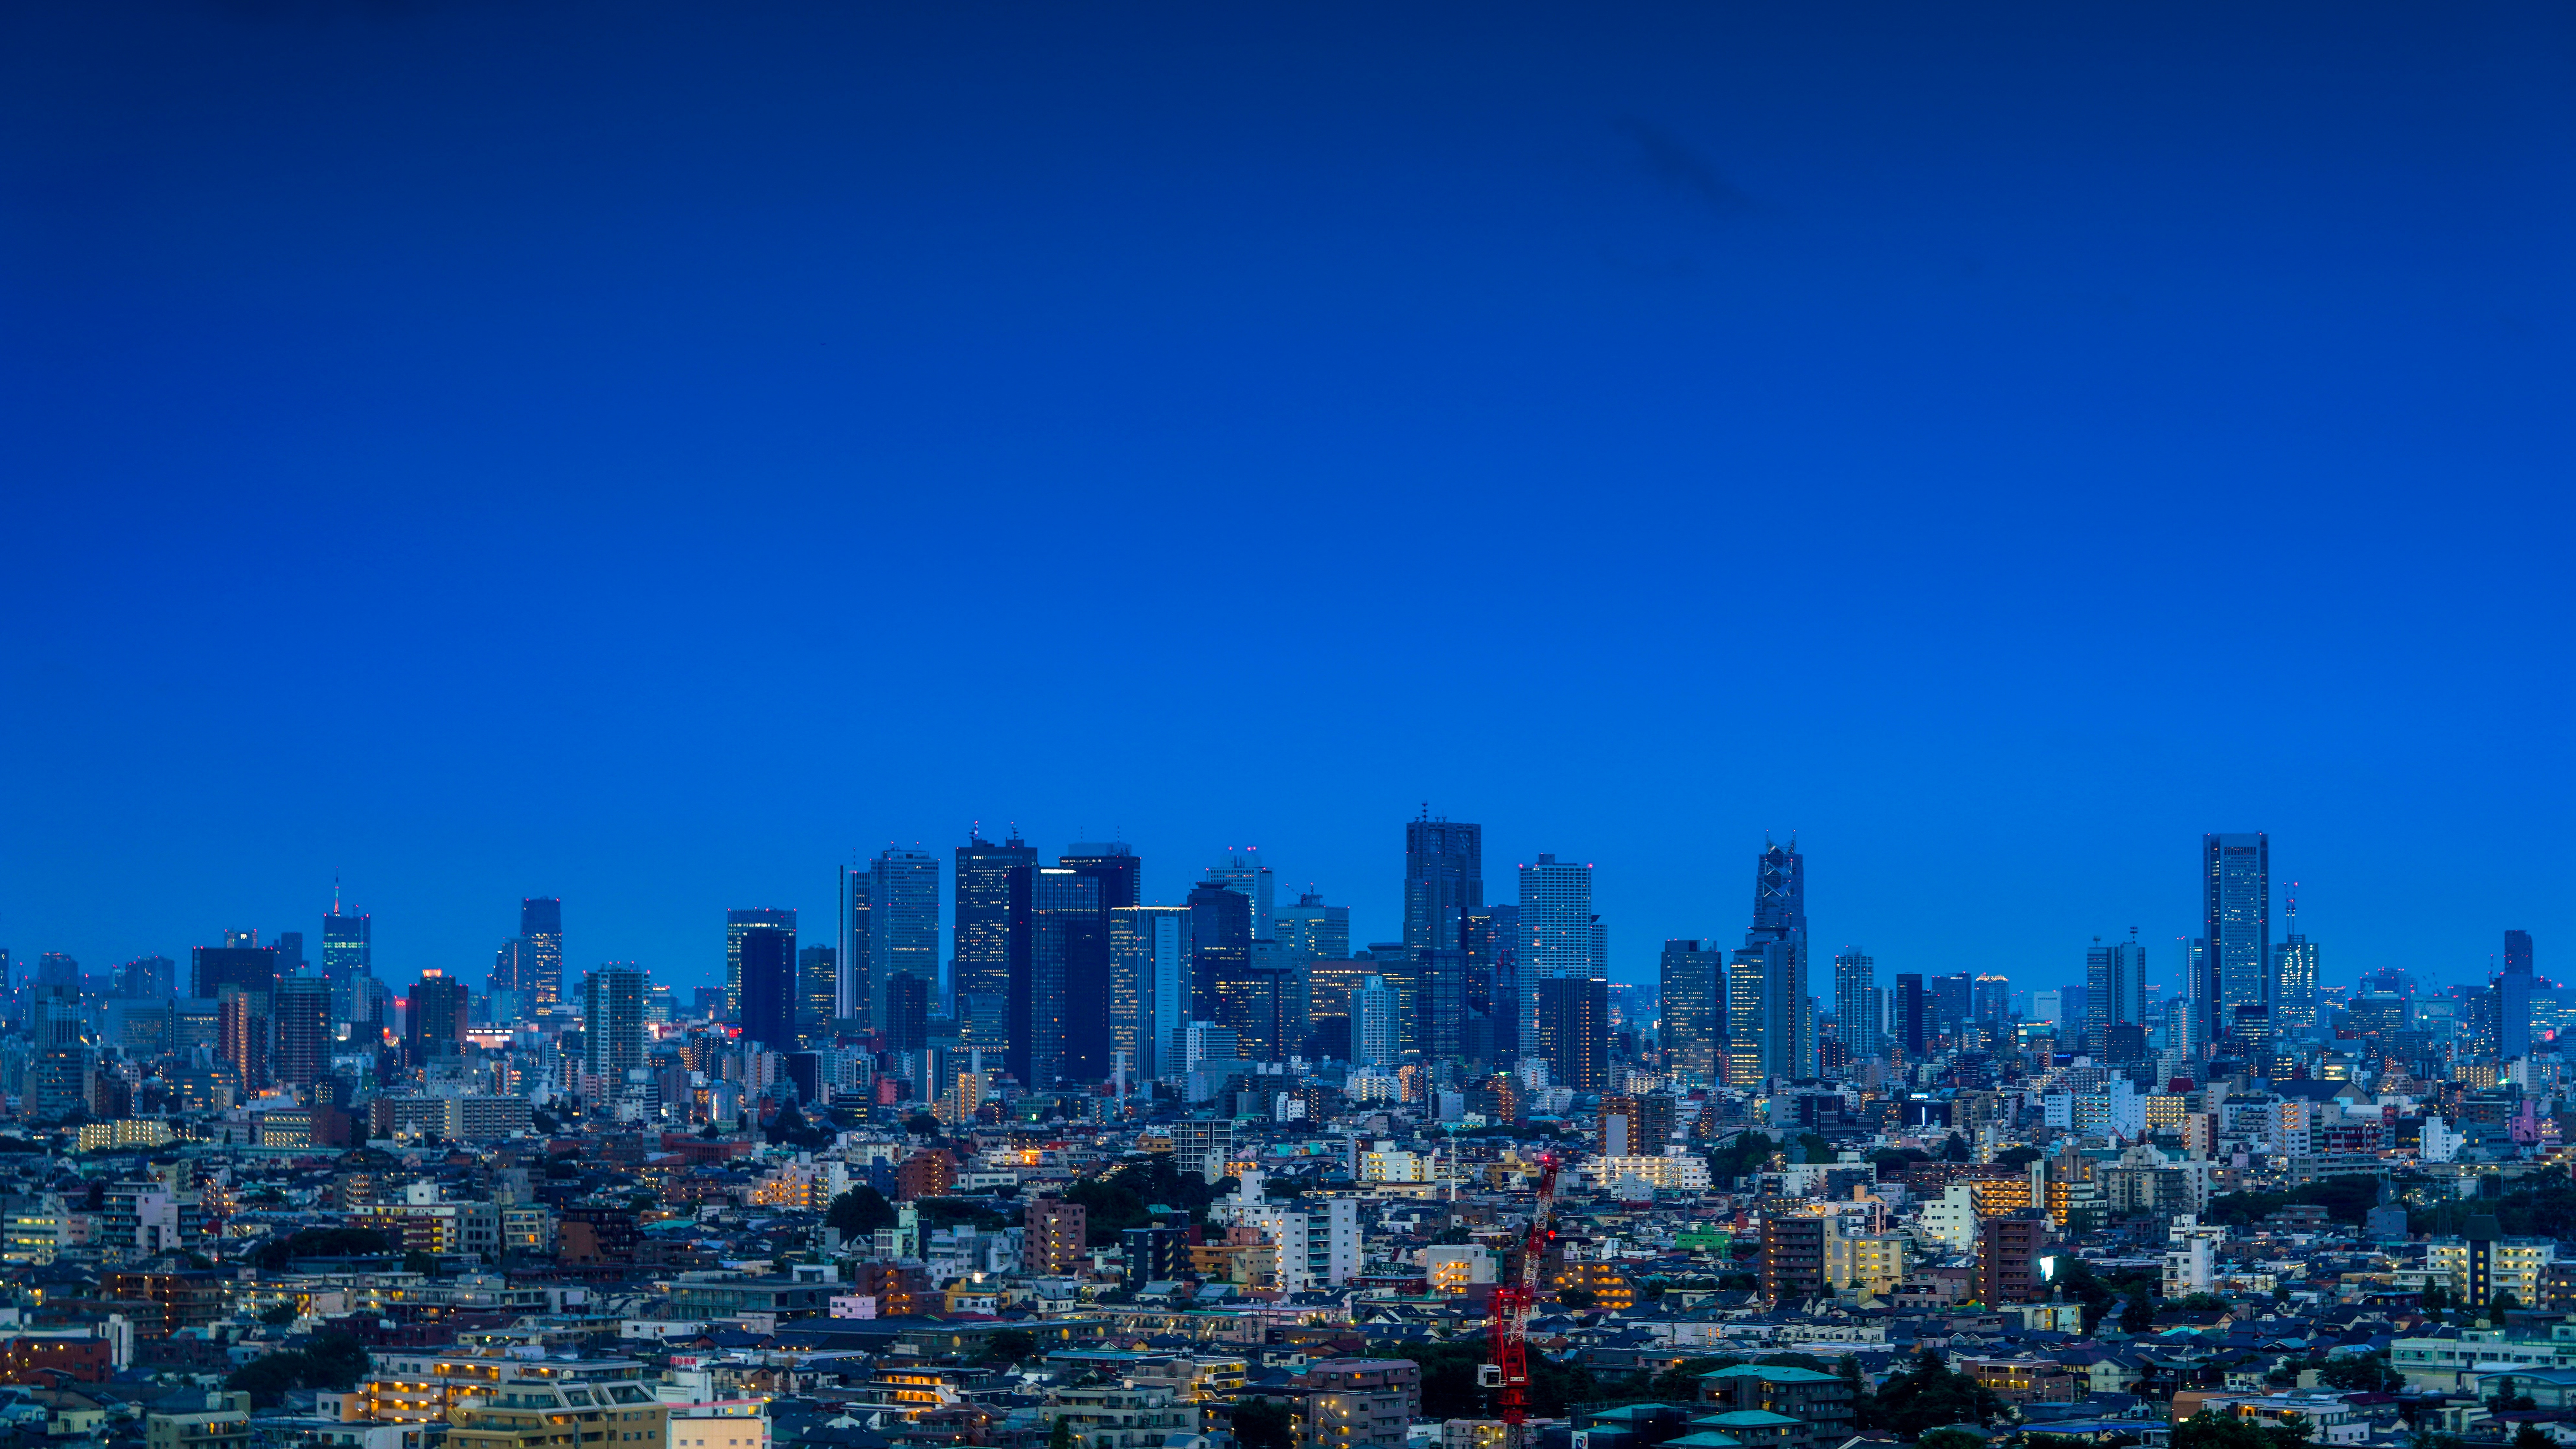 Ciudad Con Edificios de Gran Altura Bajo un Cielo Azul Durante el Día. Wallpaper in 7680x4320 Resolution